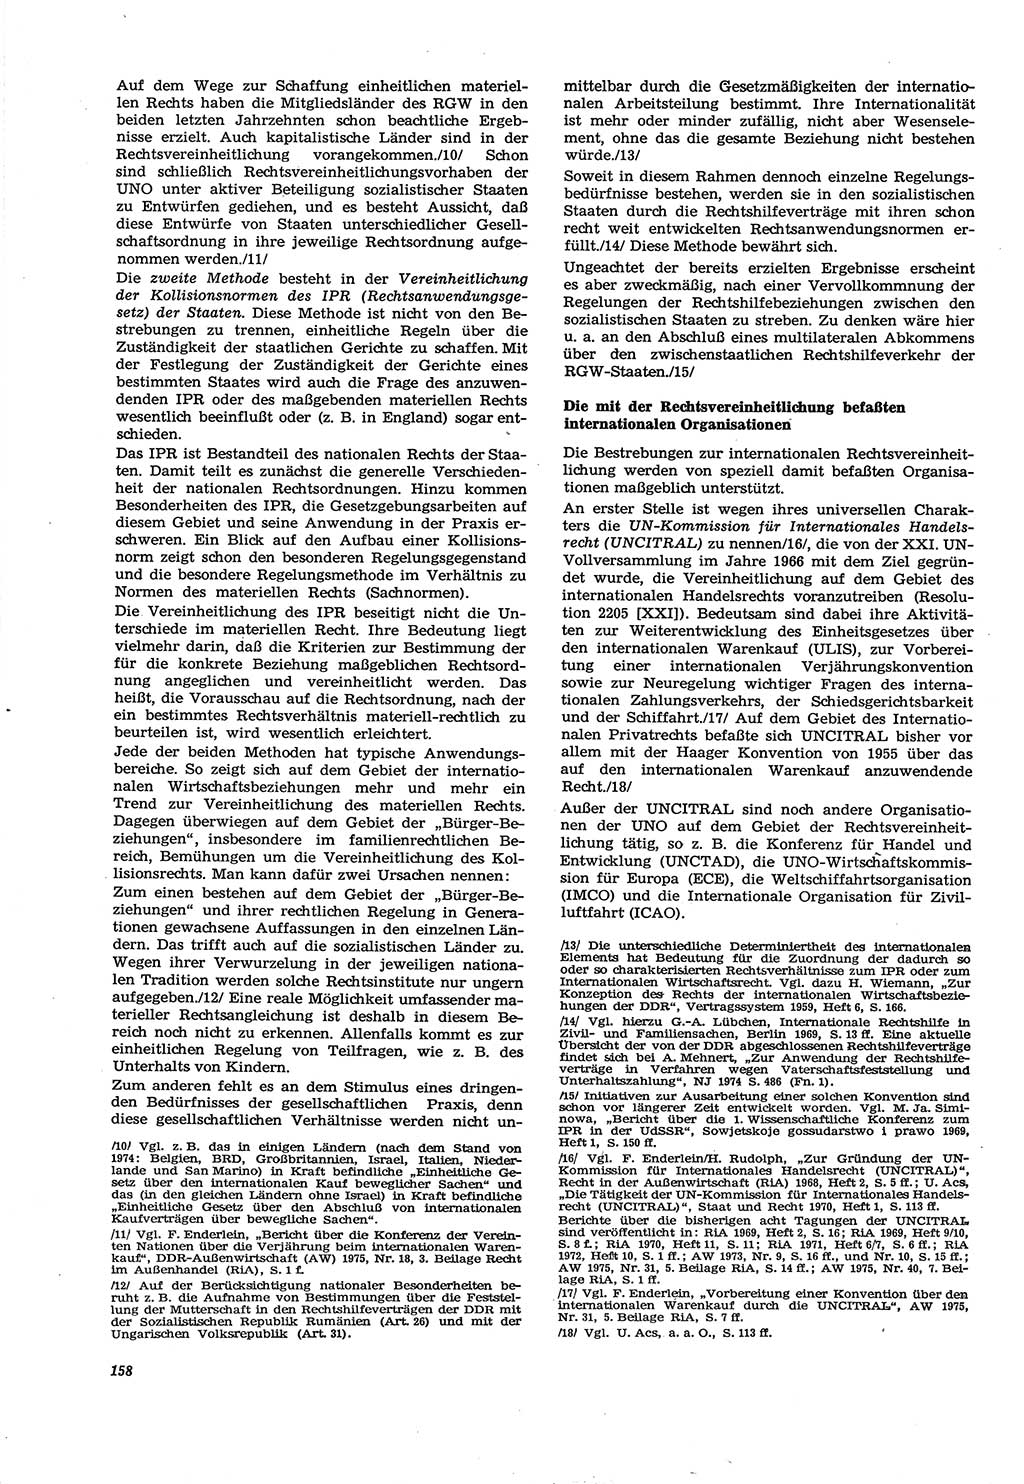 Neue Justiz (NJ), Zeitschrift für Recht und Rechtswissenschaft [Deutsche Demokratische Republik (DDR)], 30. Jahrgang 1976, Seite 158 (NJ DDR 1976, S. 158)